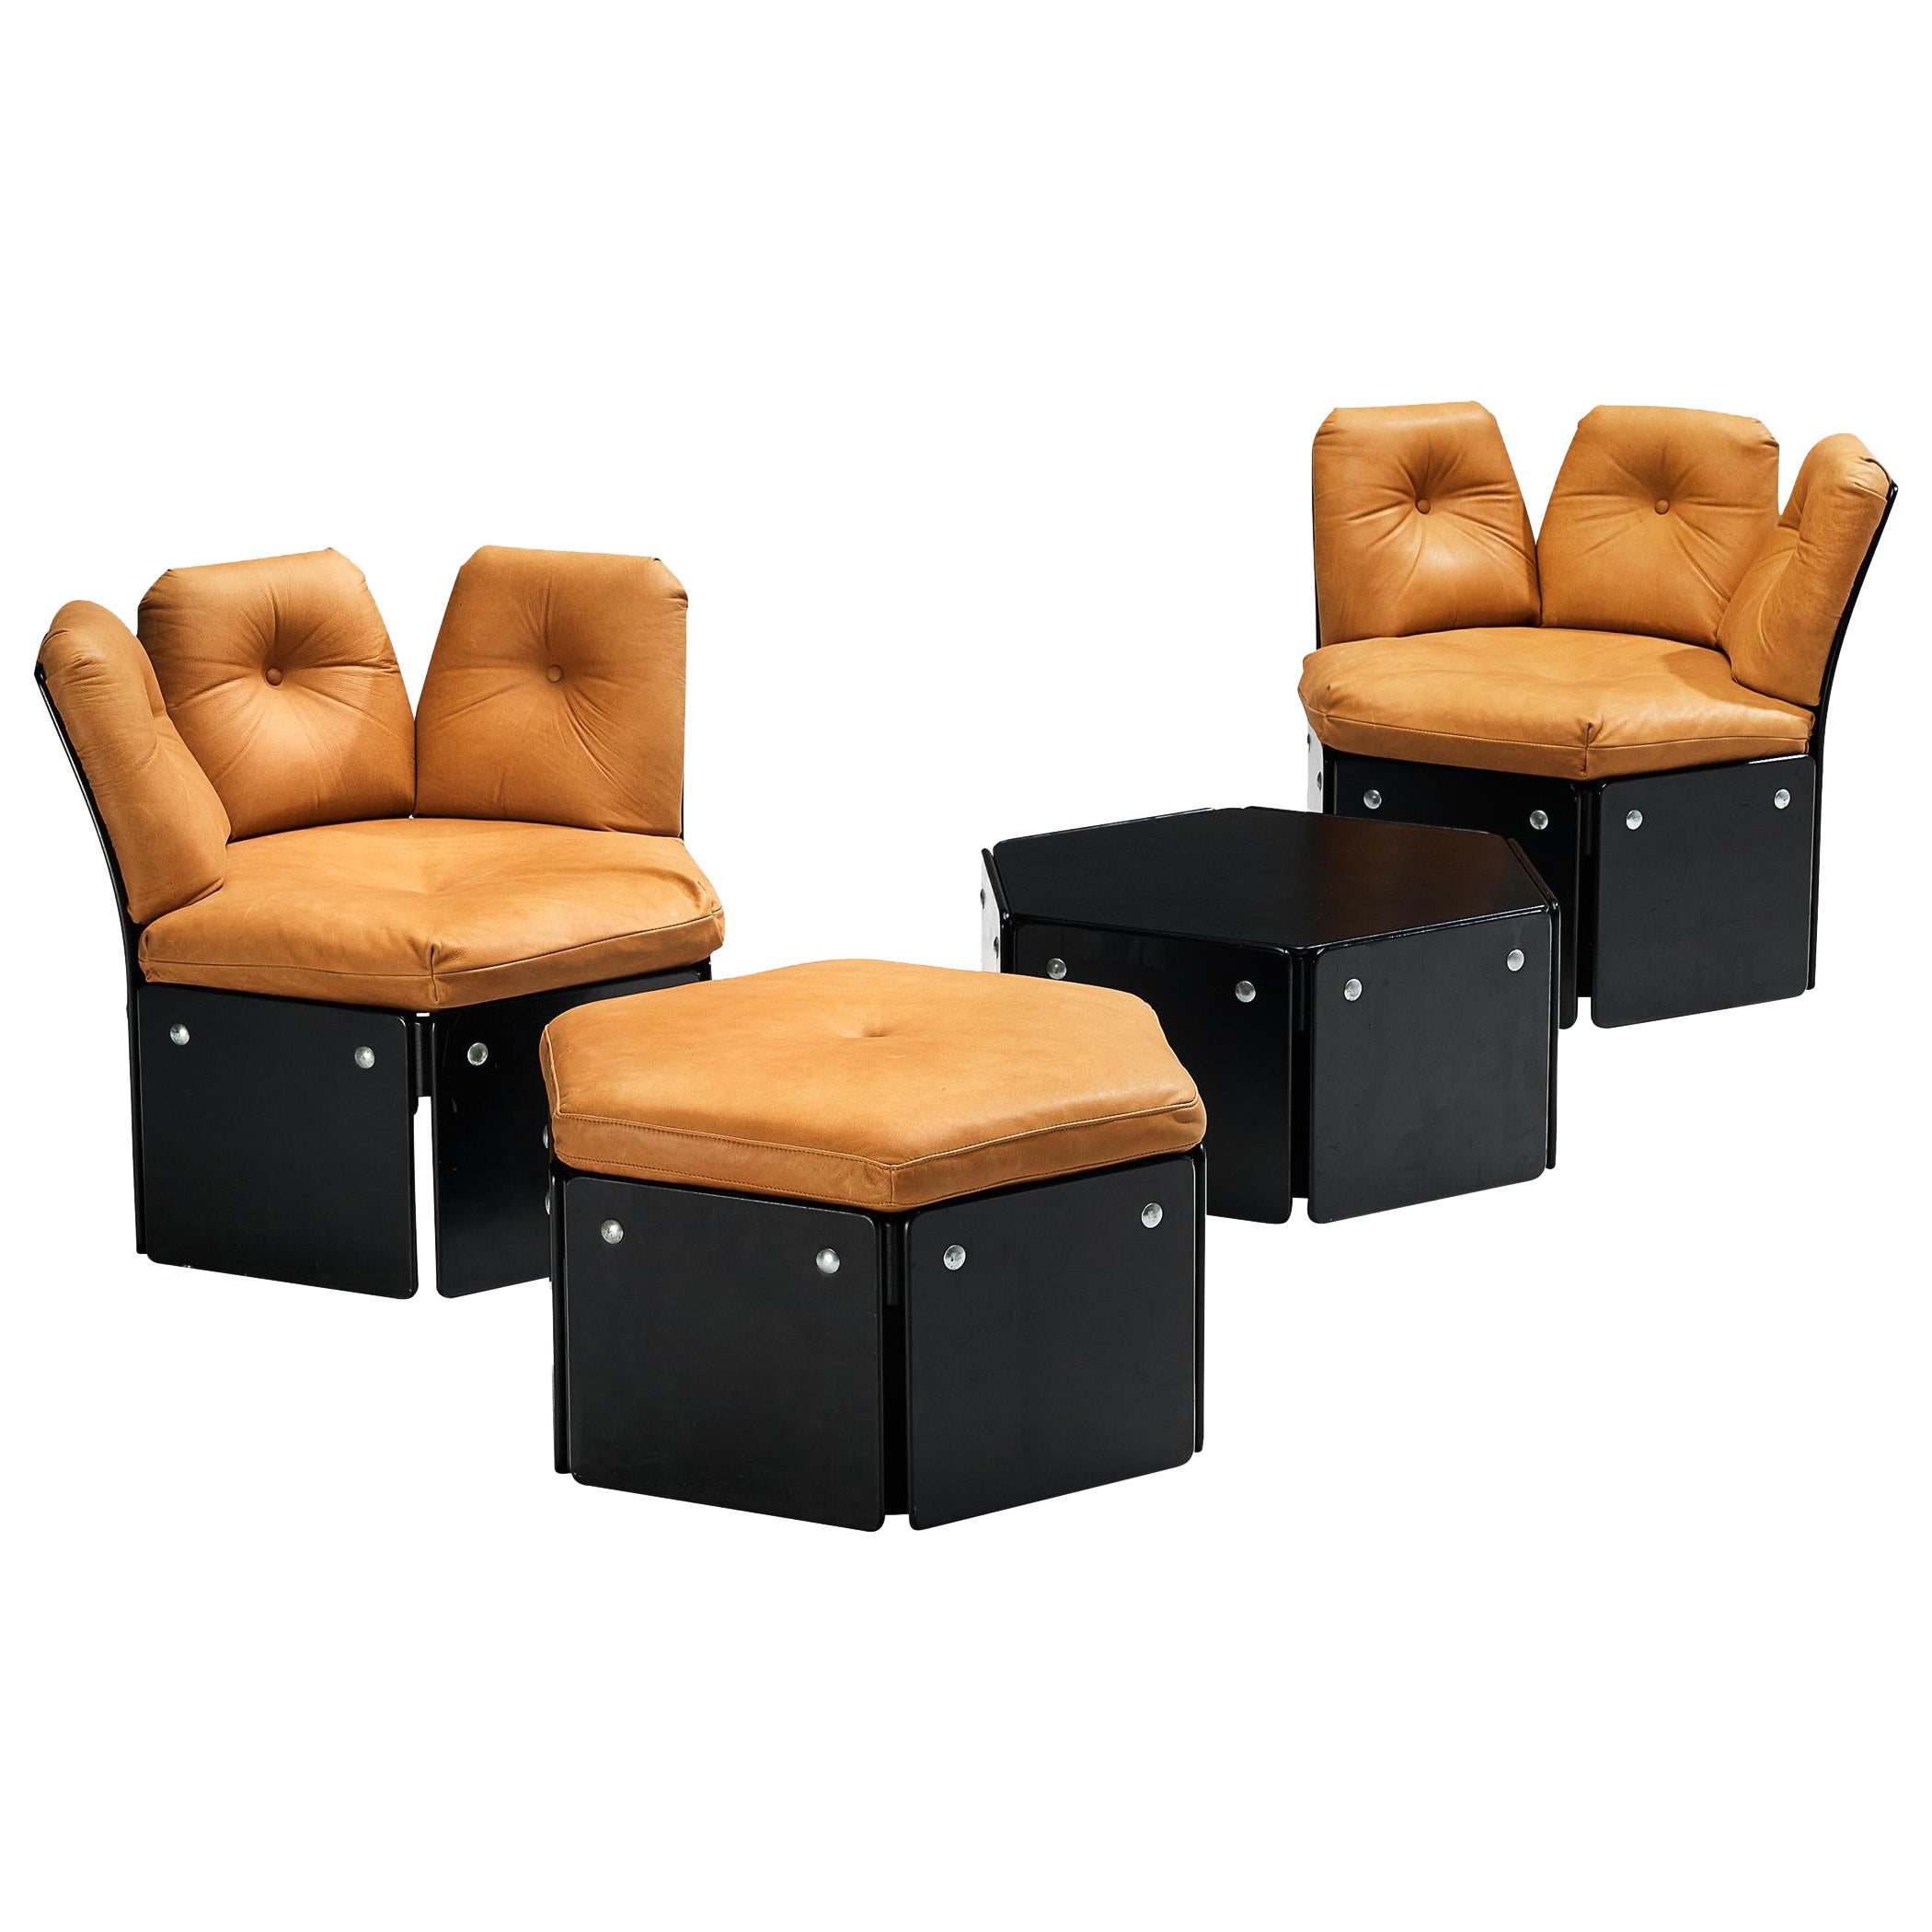 Illum Wikkelsø for CFC Silkeborg Living Room Set in Cognac Leather  For Sale